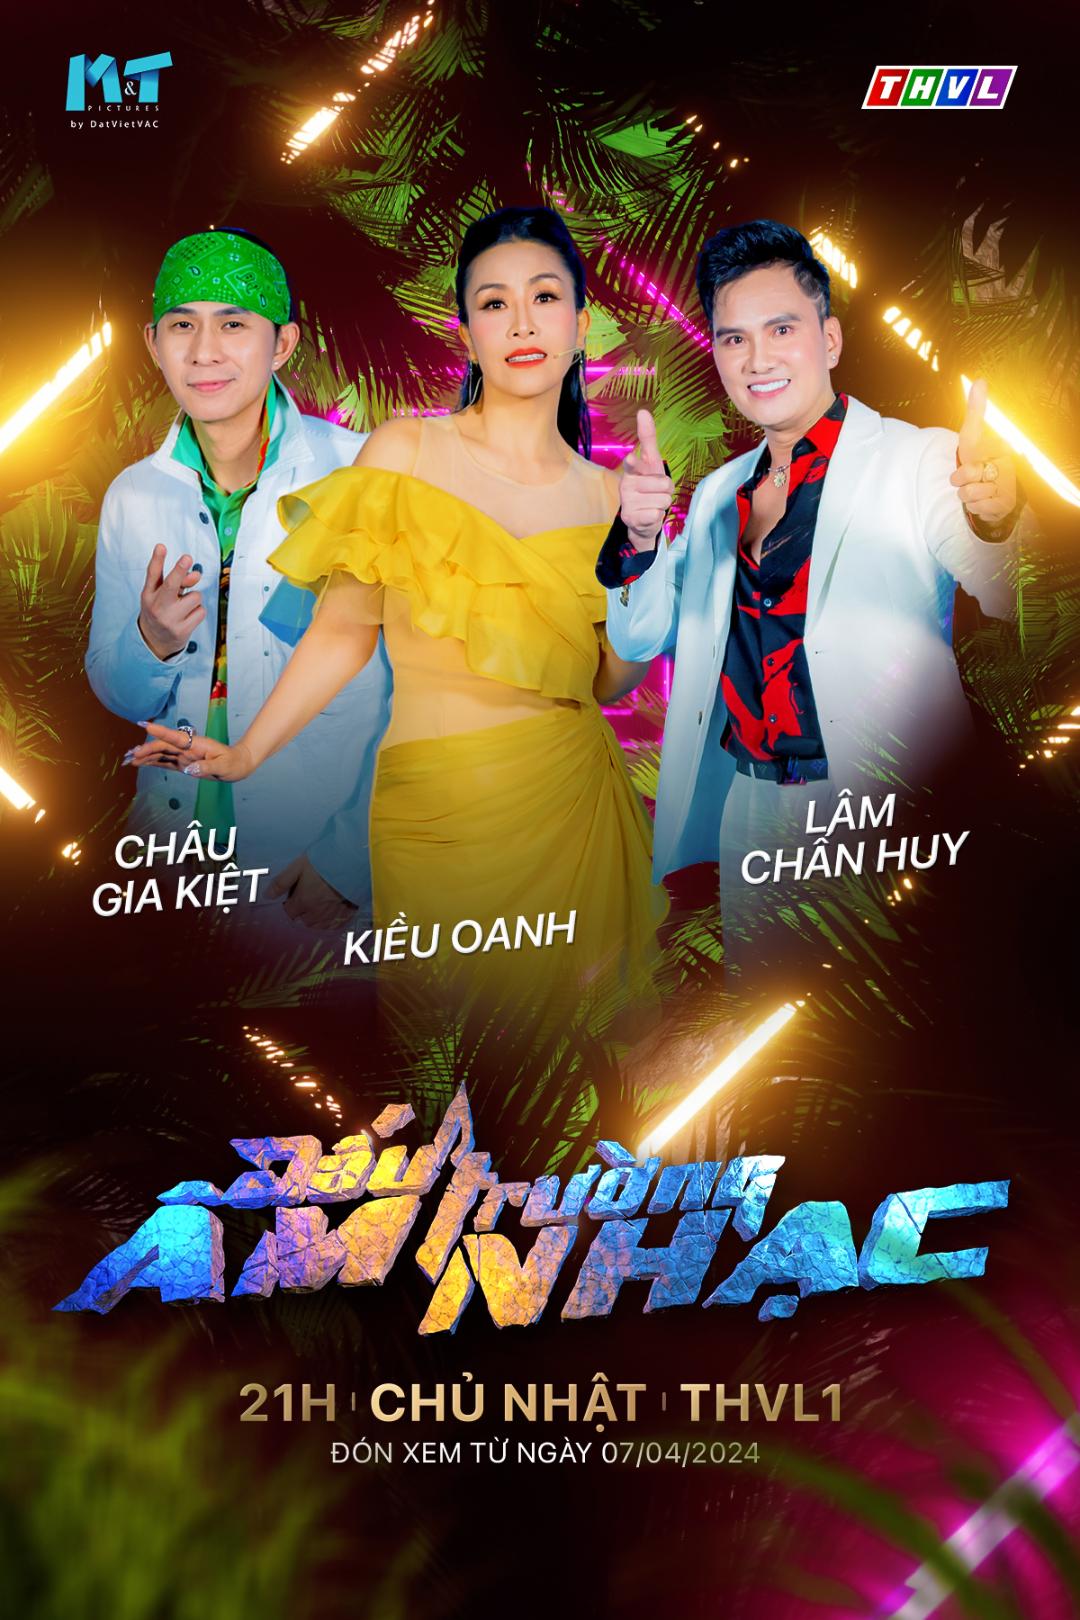 DTAN poster KM Lâm Chấn Huy trổ tài làm mai nhưng thất bại tại gameshow âm nhạc